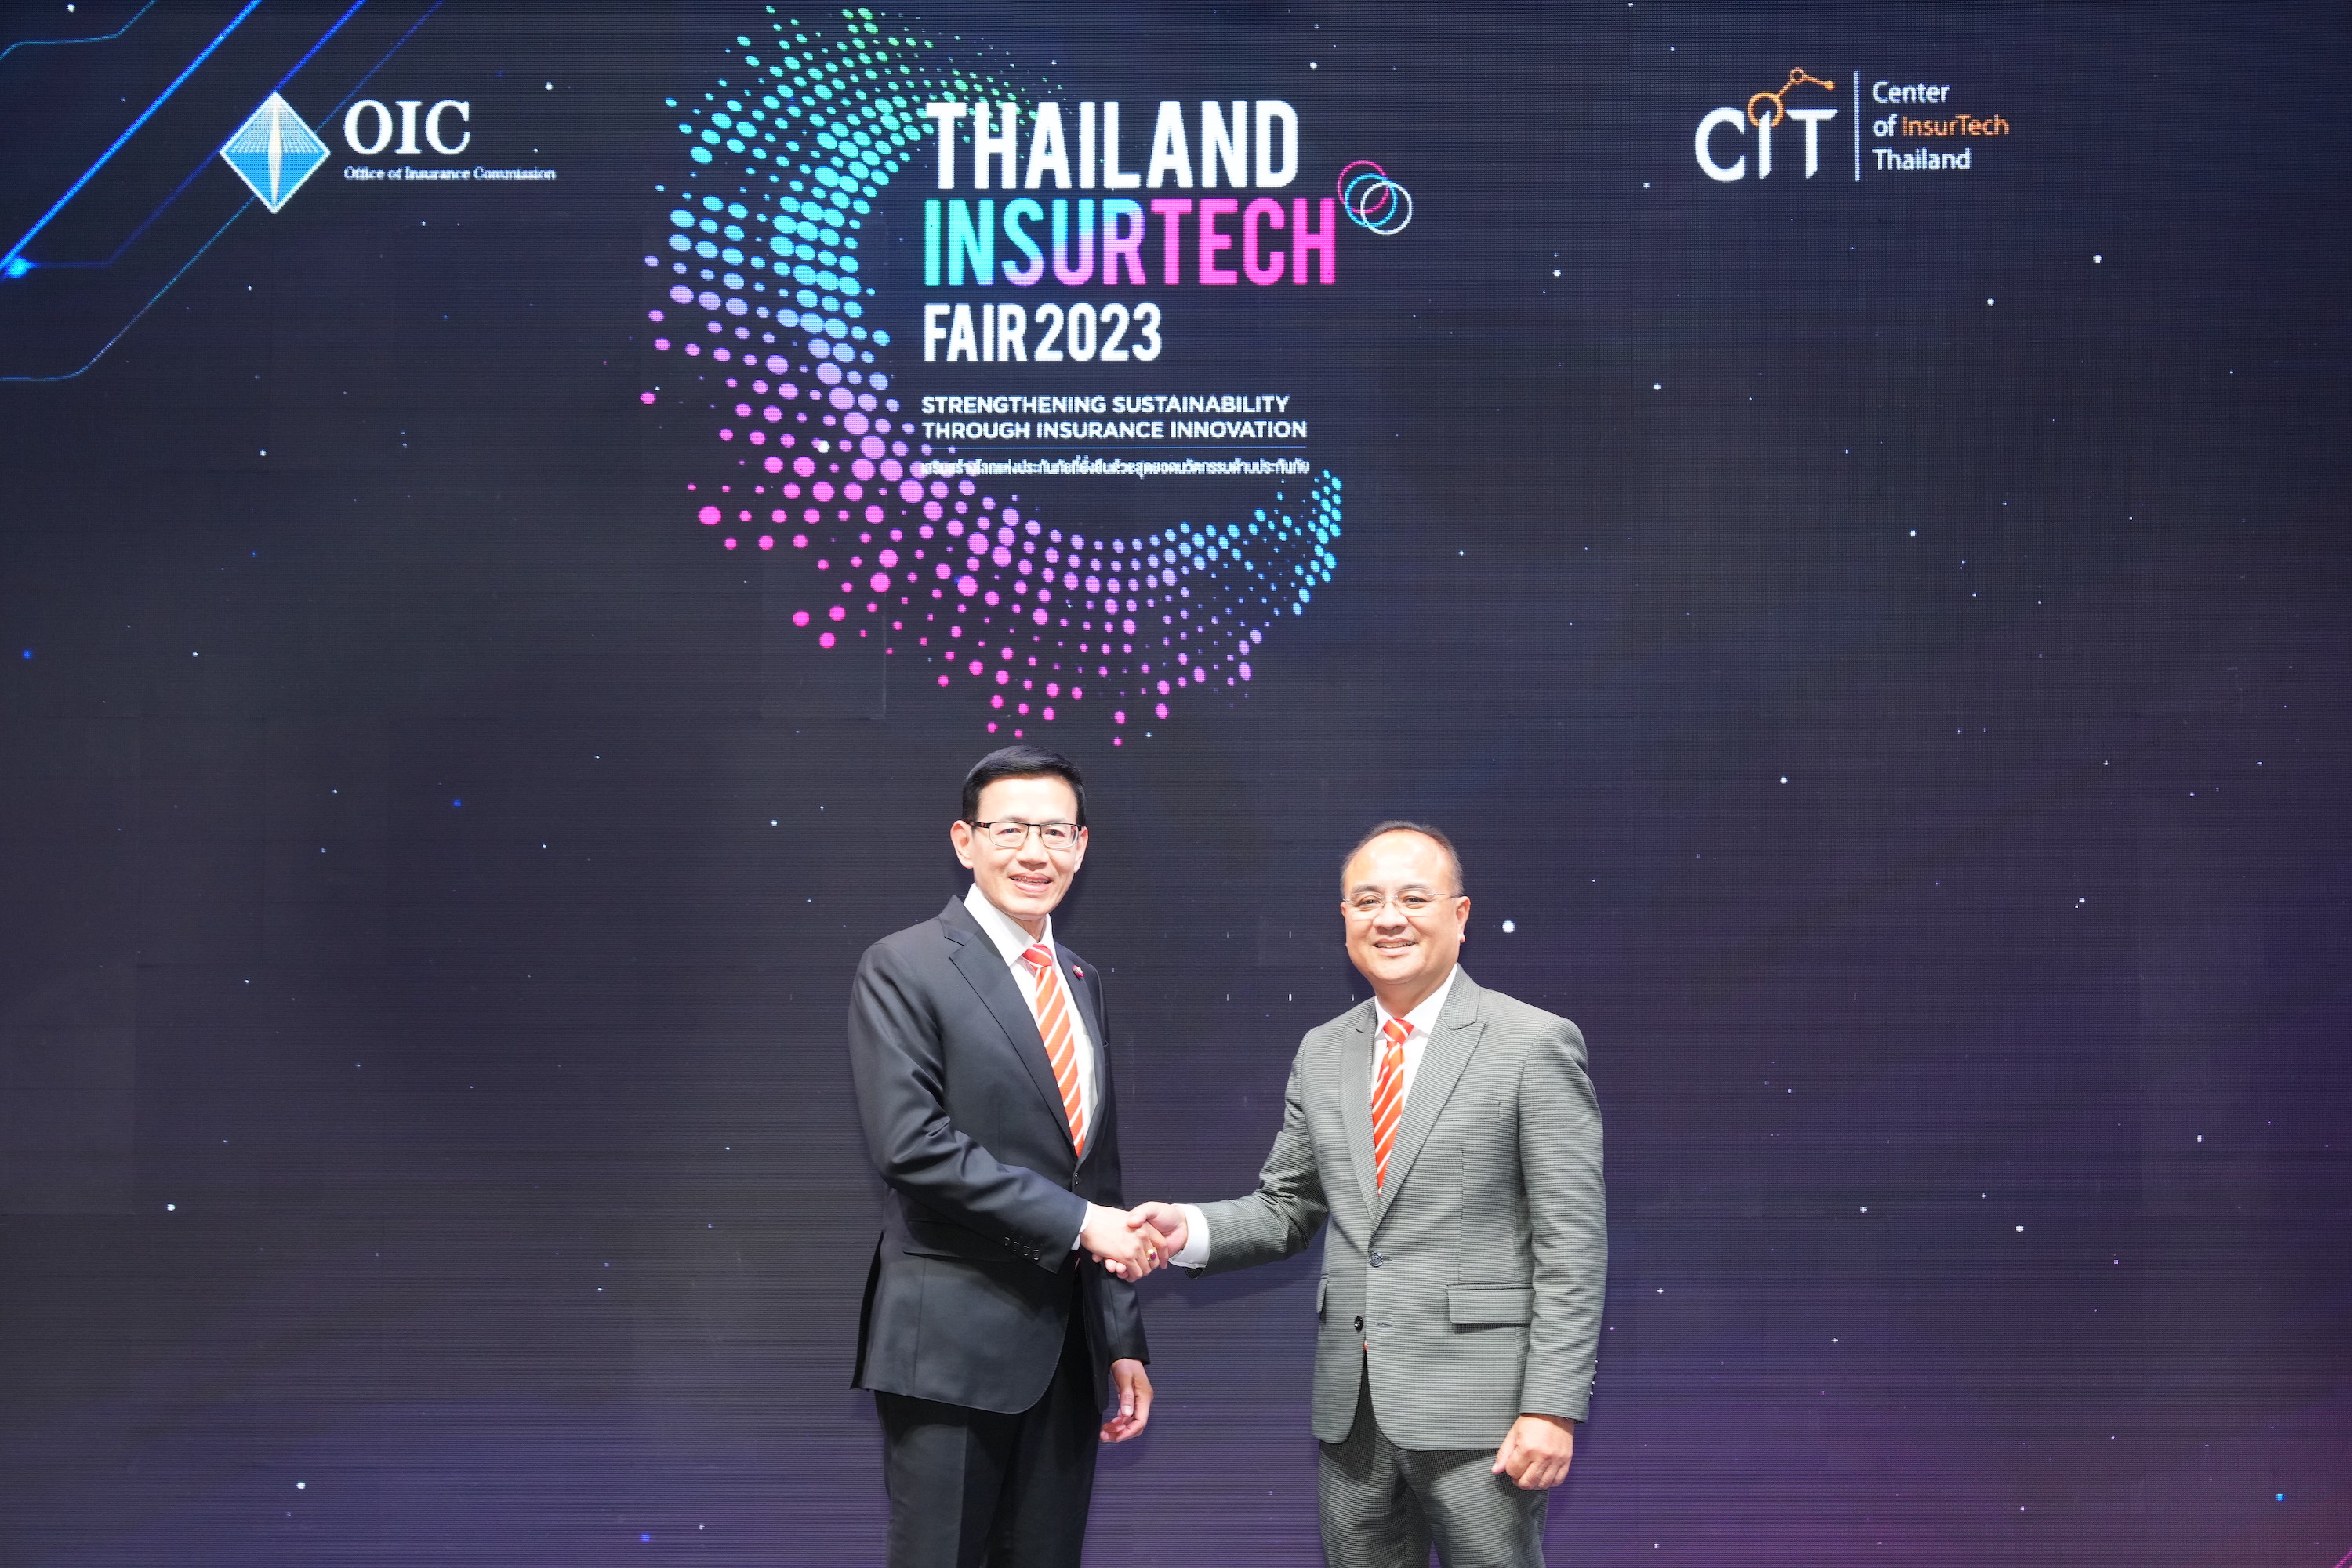 คปภ. เปิดงานมหกรรมประกันภัยสุดยิ่งใหญ่ในอาเซียน “Thailand InsurTech Fair 2023” ขนทัพแพคเกจประกันฯ จากบริษัทชั้นนำ ลดสูงสุด 30% พร้อมโชว์นวัตกรรมและเทคโนโลยีด้านประกันภัยสุดล้ำ ตอบโจทย์ทุกไลฟ์สไตล์ยุคดิจิทัล